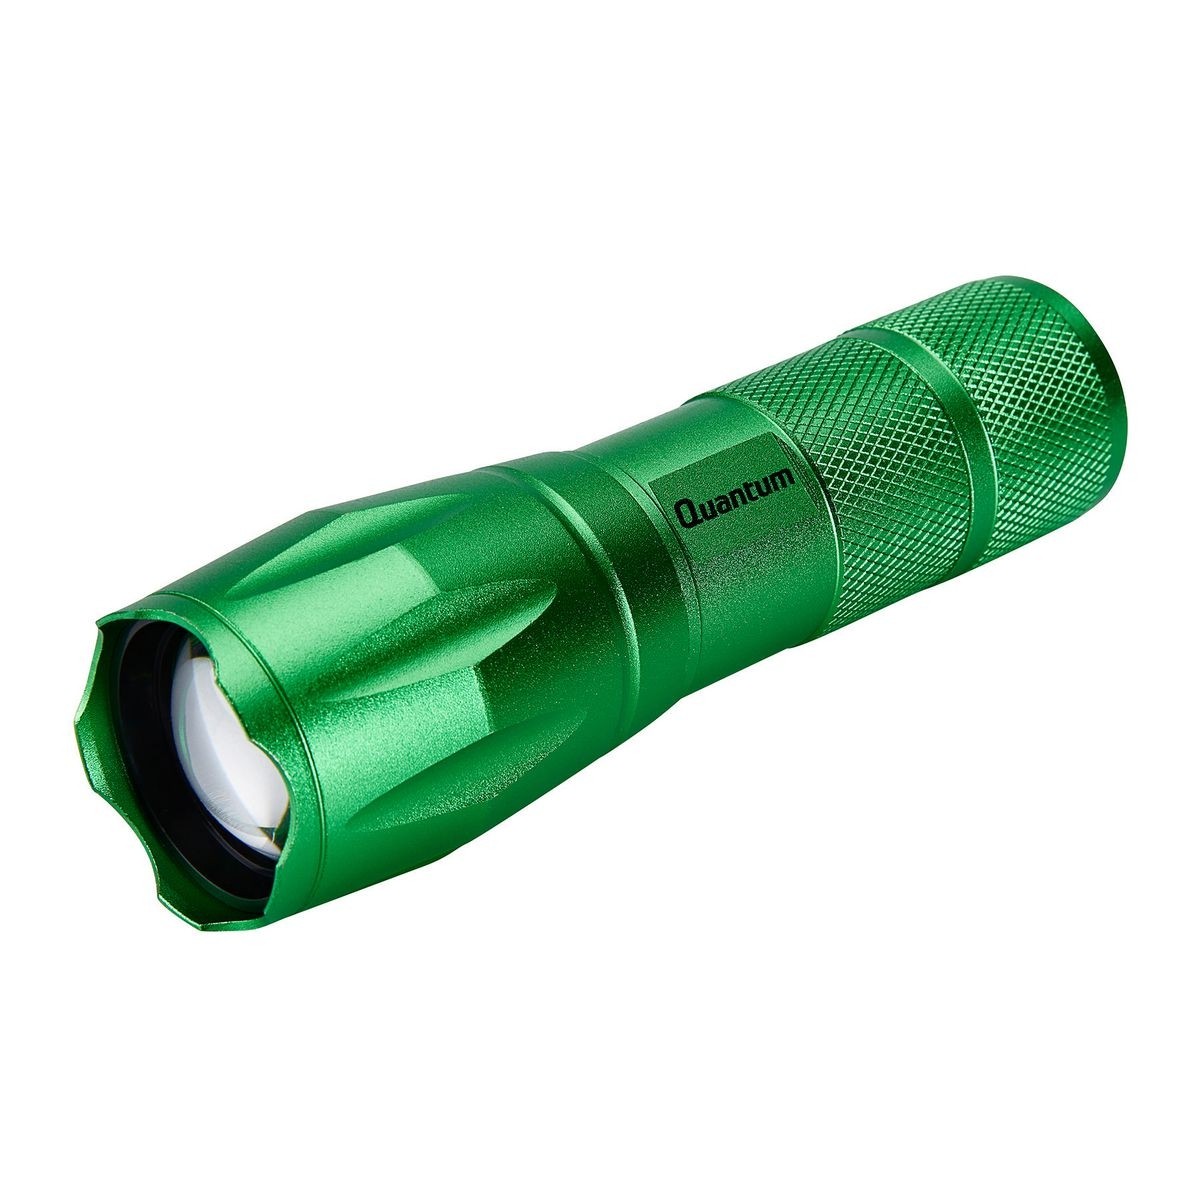 QUANTUM 588 Lumen Tactical Flashlight - Green - Item 57188